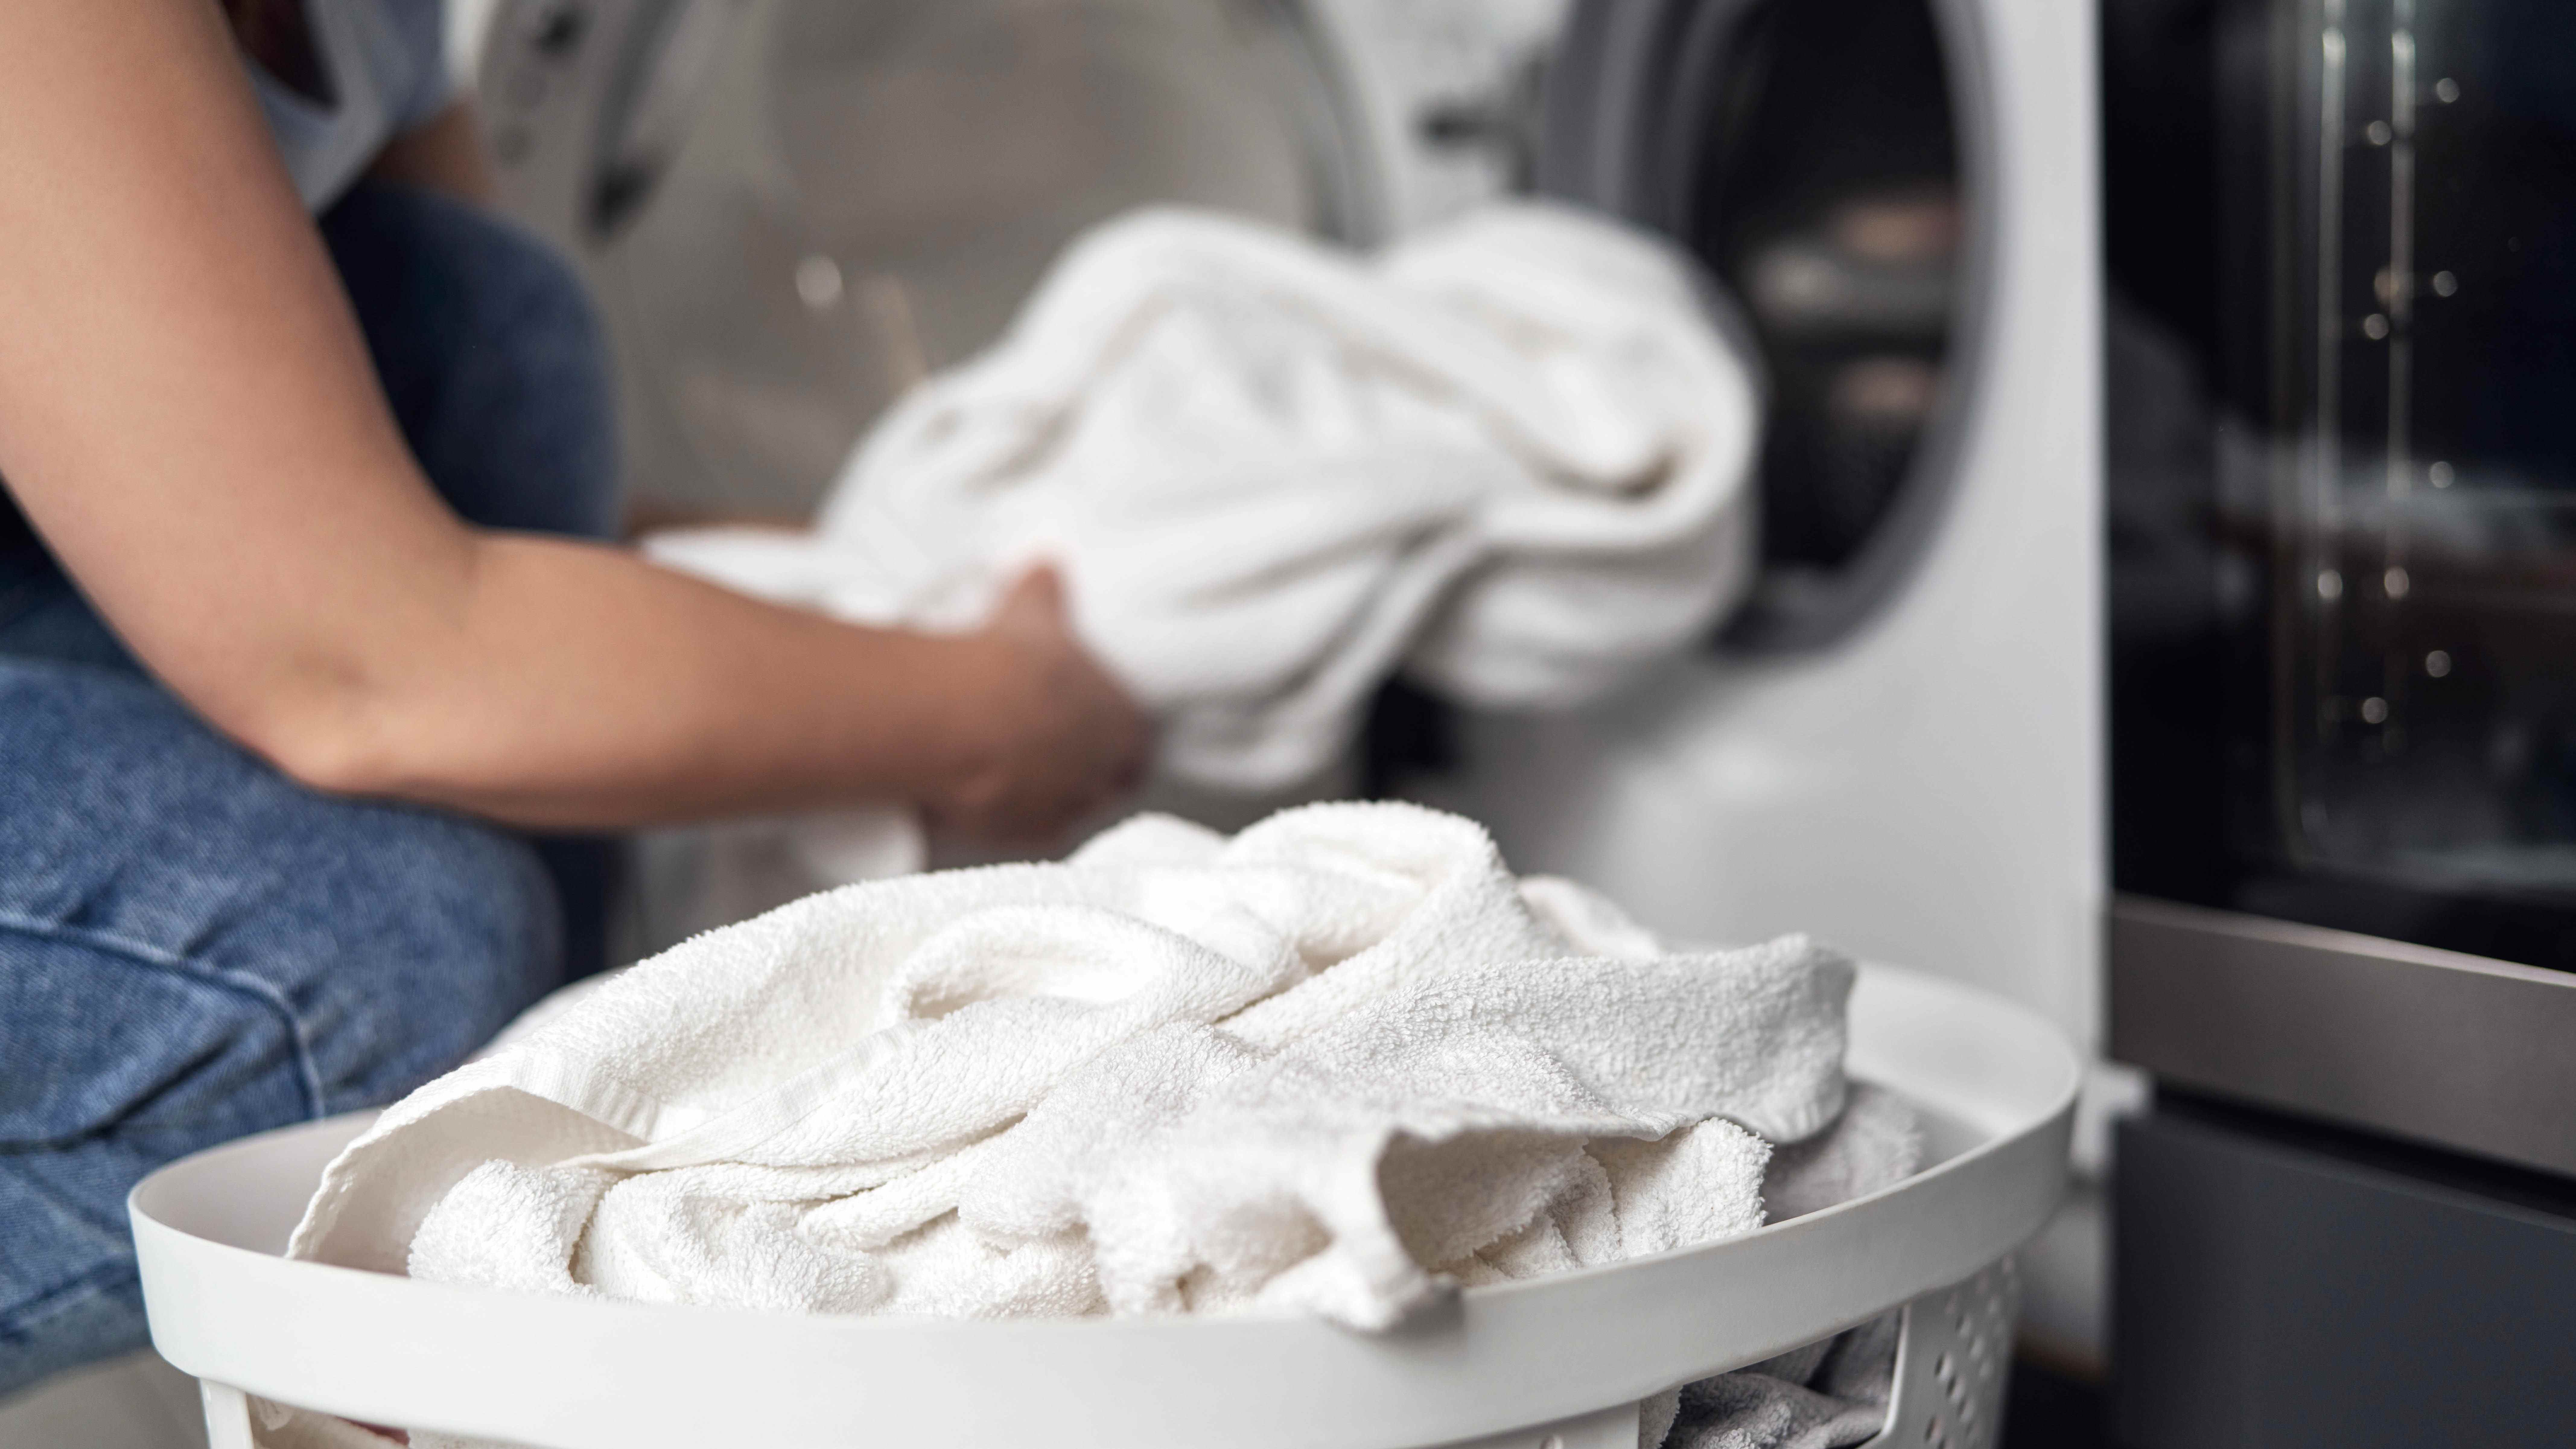 Chargement des serviettes blanches dans la machine à laver